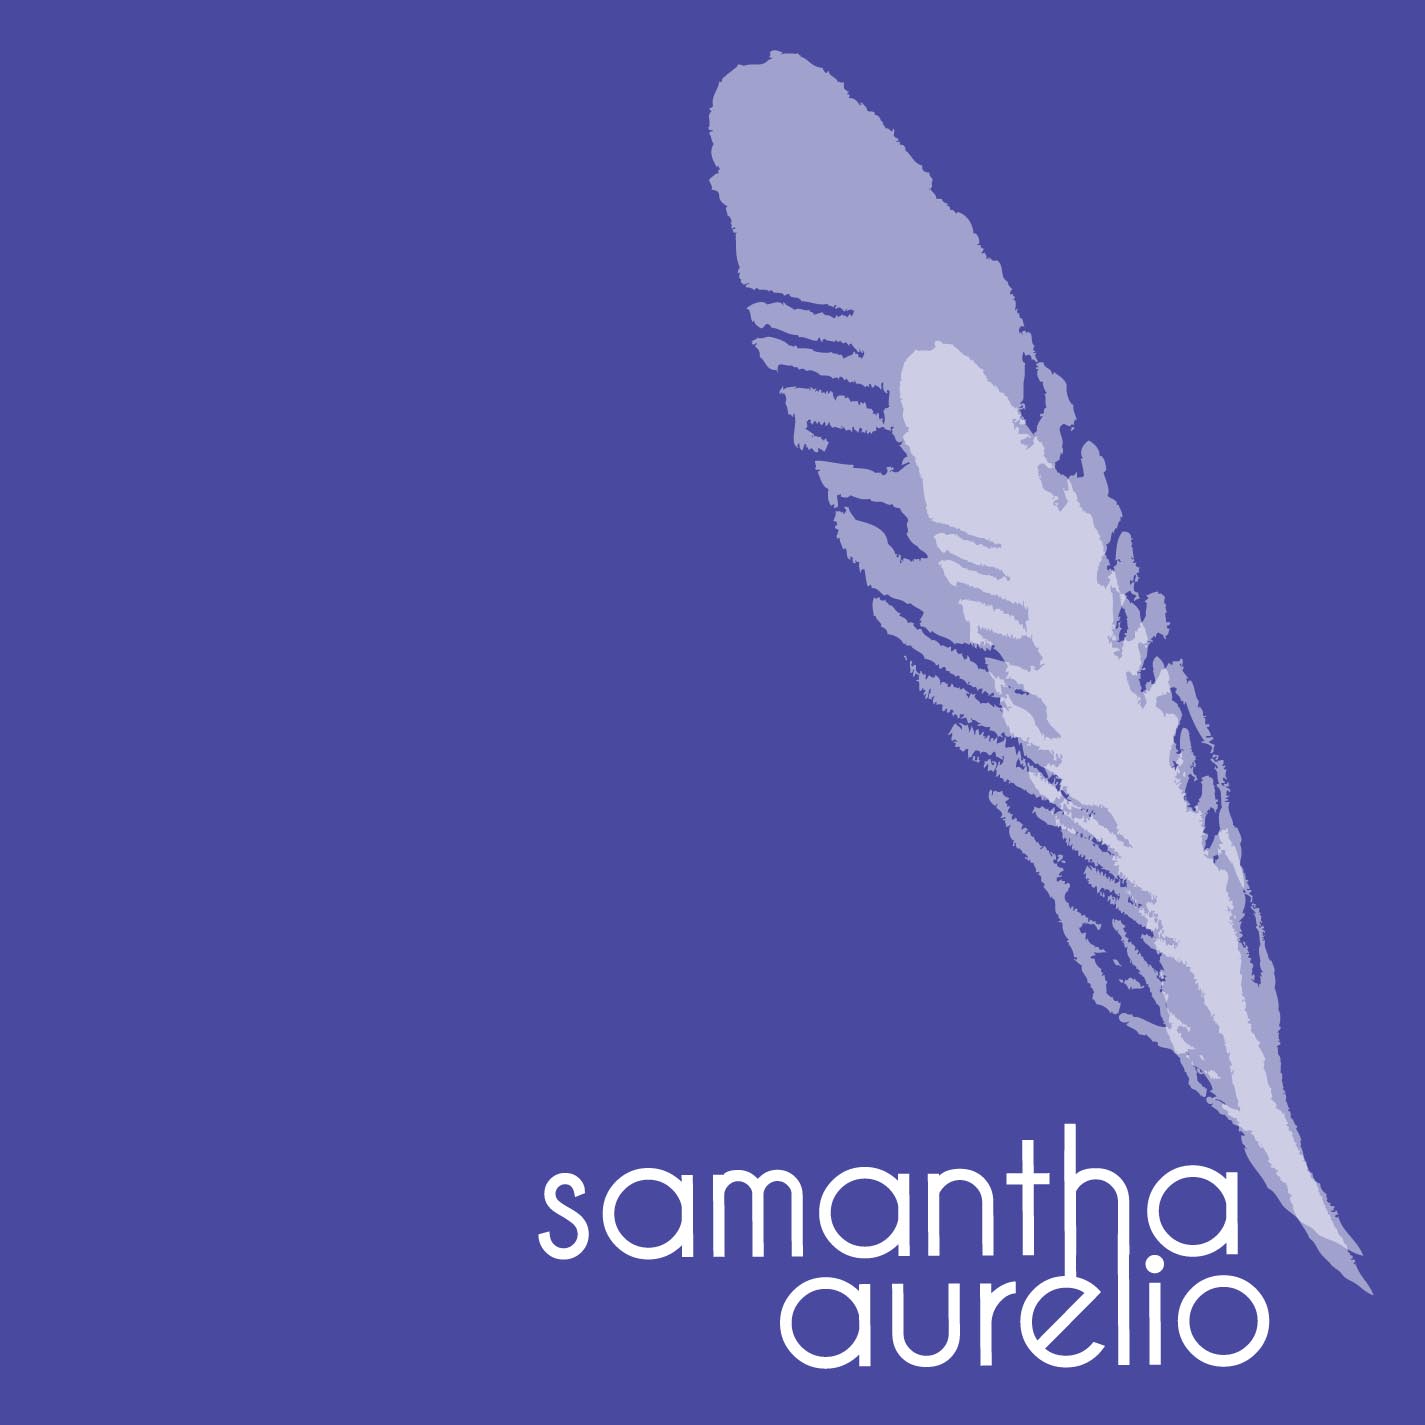 Samantha Aurelio